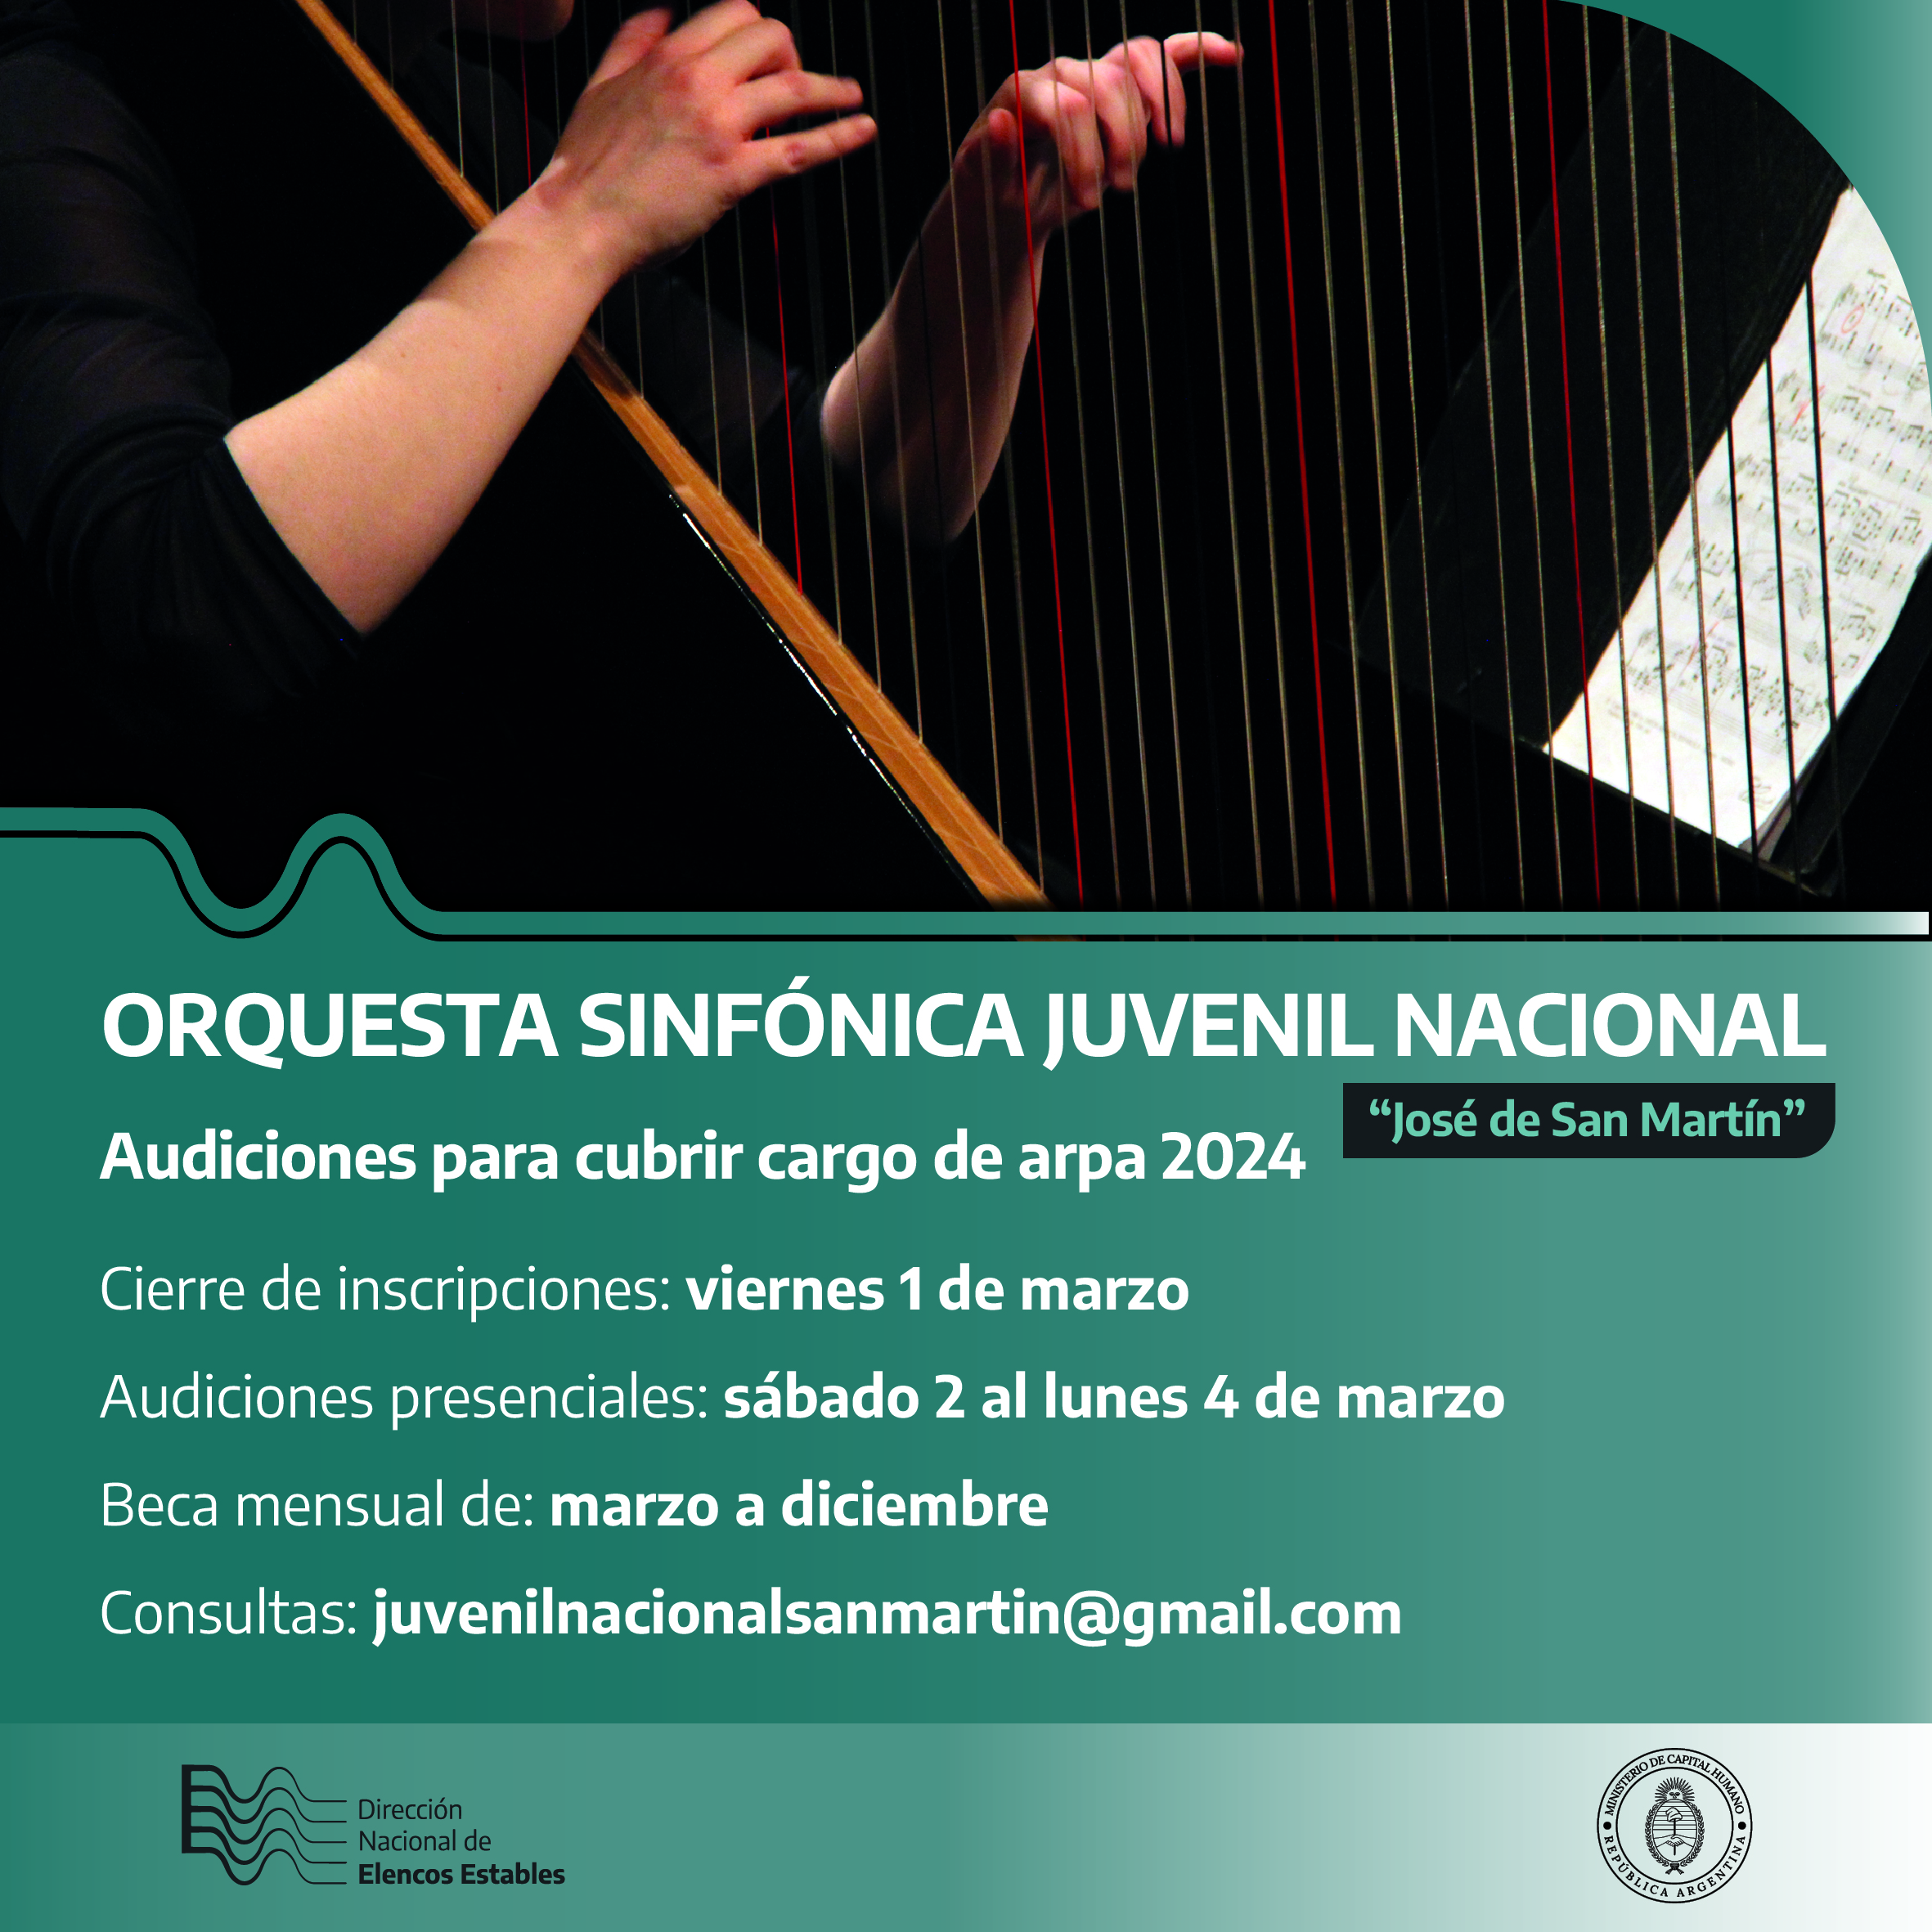 Audiciones para ejecutante de Arpa.- Orquesta Sinfónica Juvenil Nacional José de San Martín.- Convocatoria 2024.